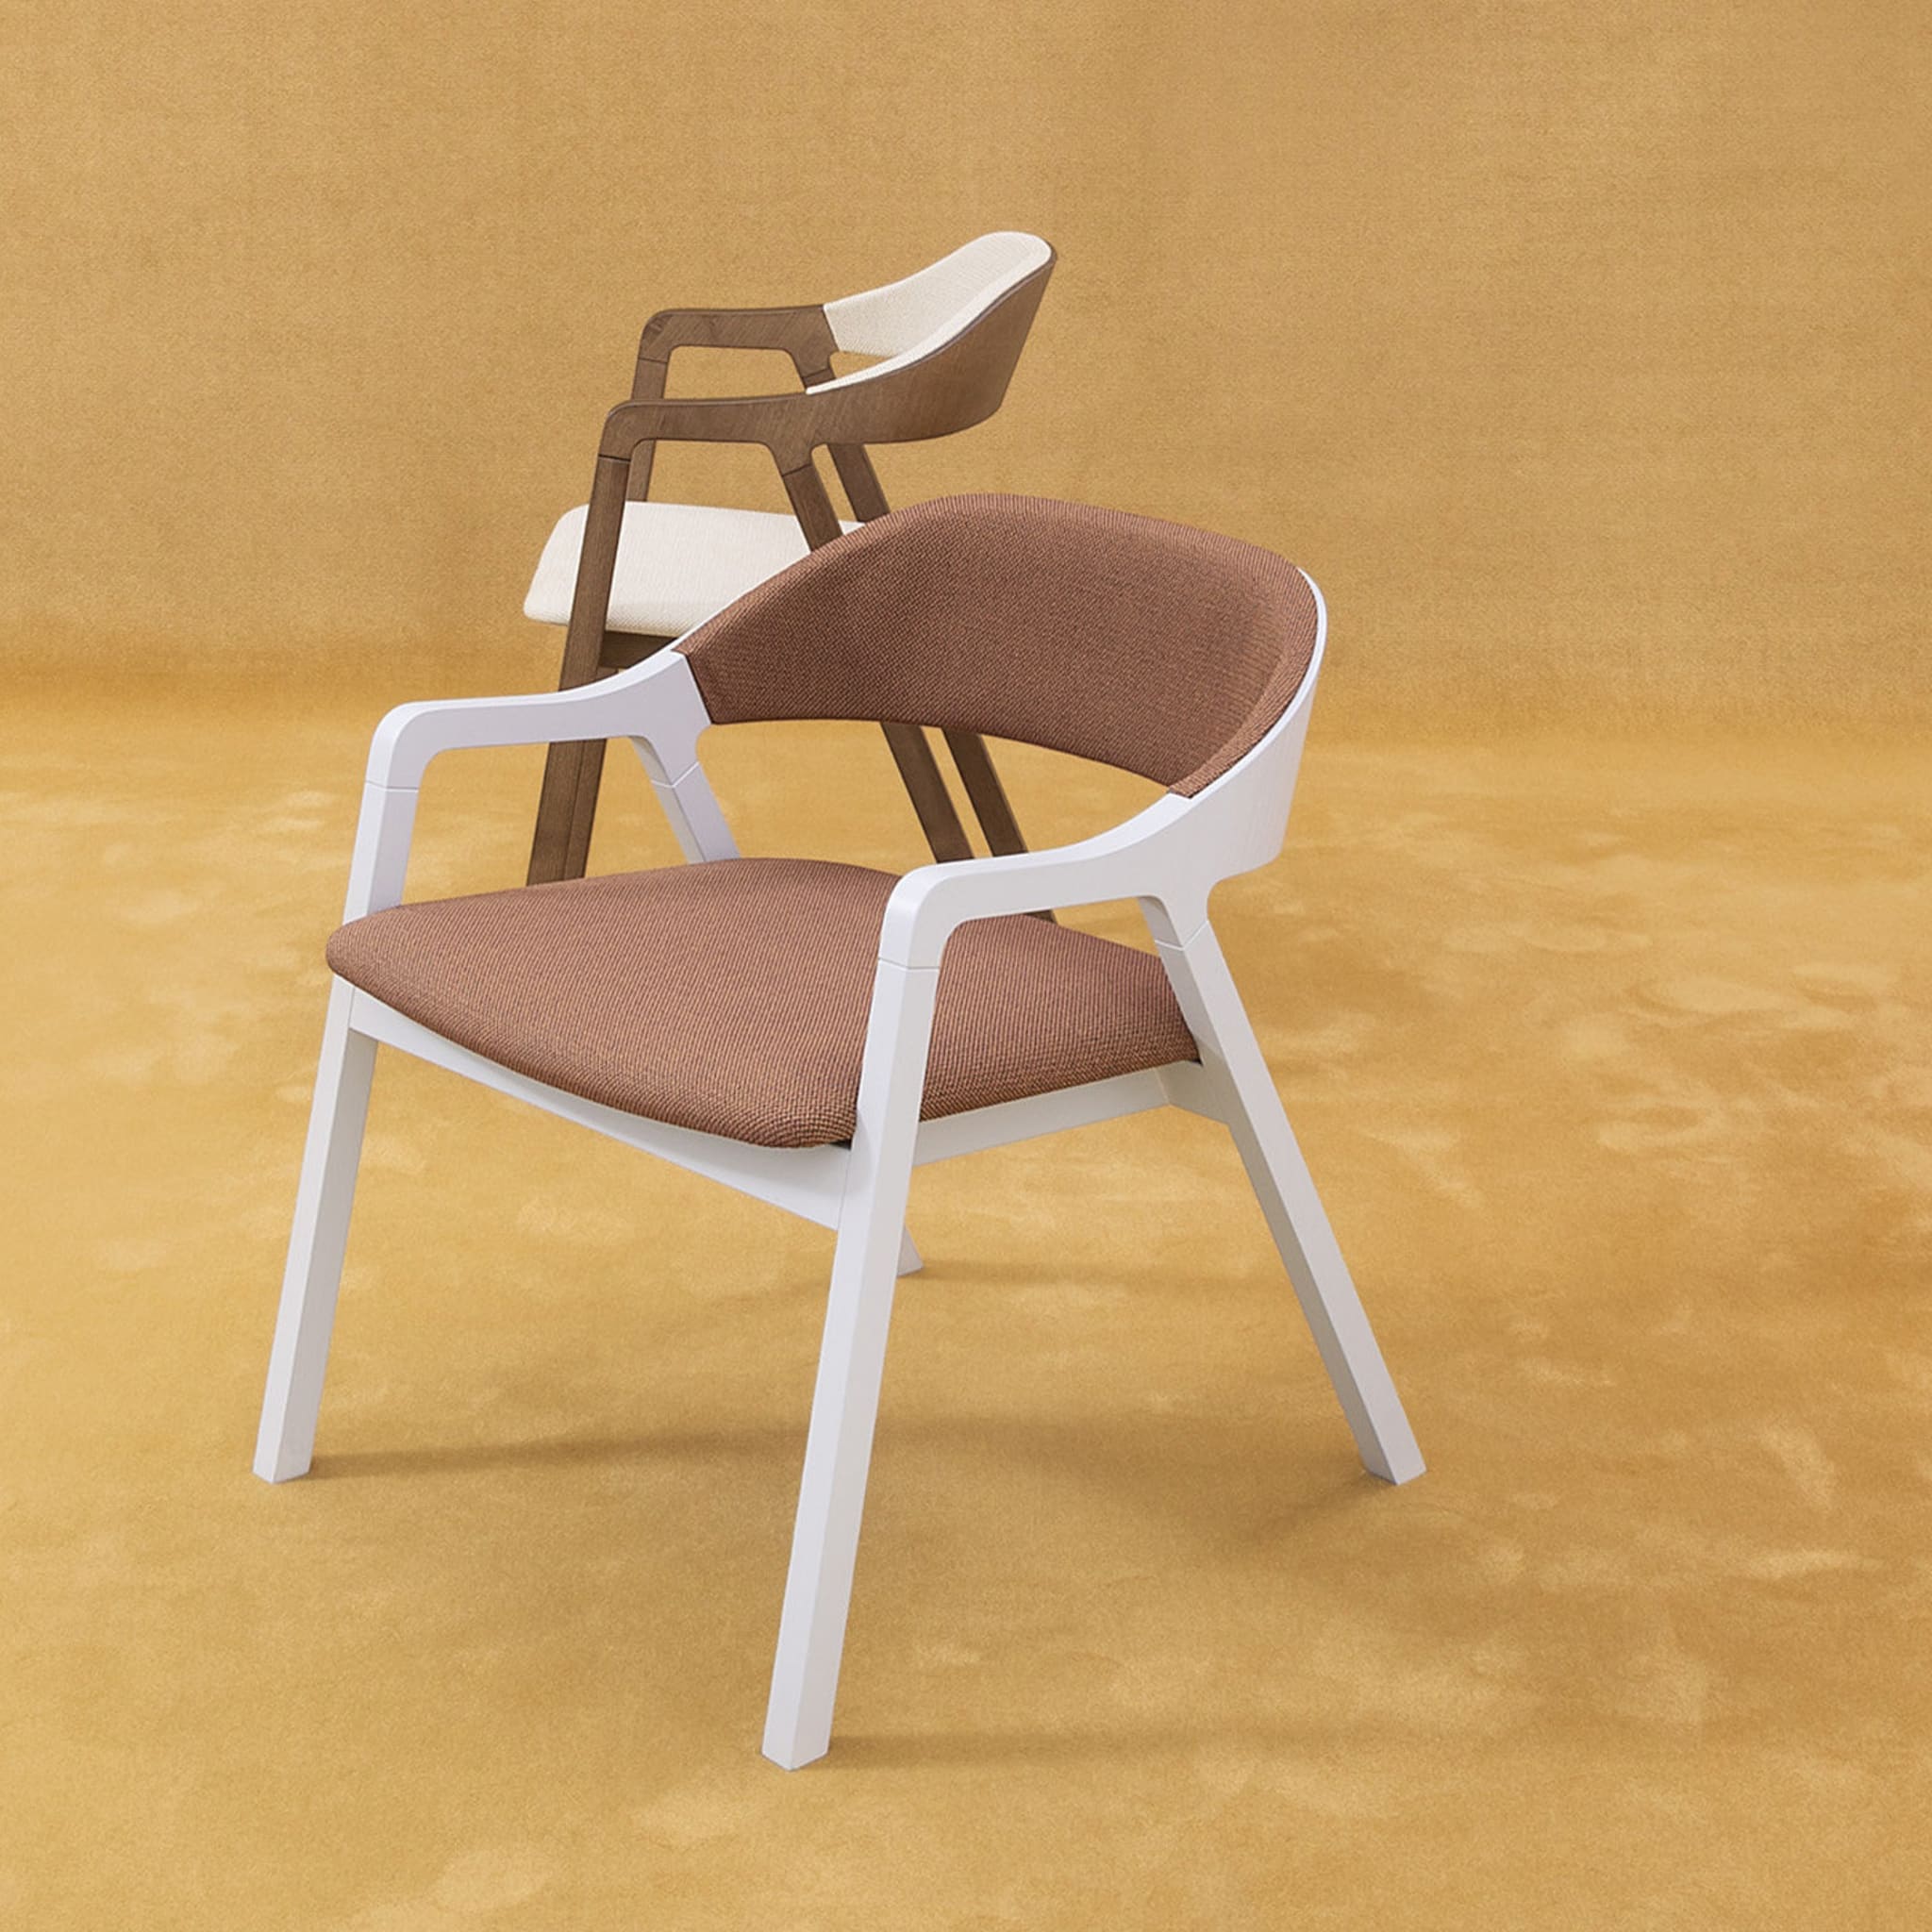 Layer Lounge Chair by Michael Geldmacher - Alternative view 3